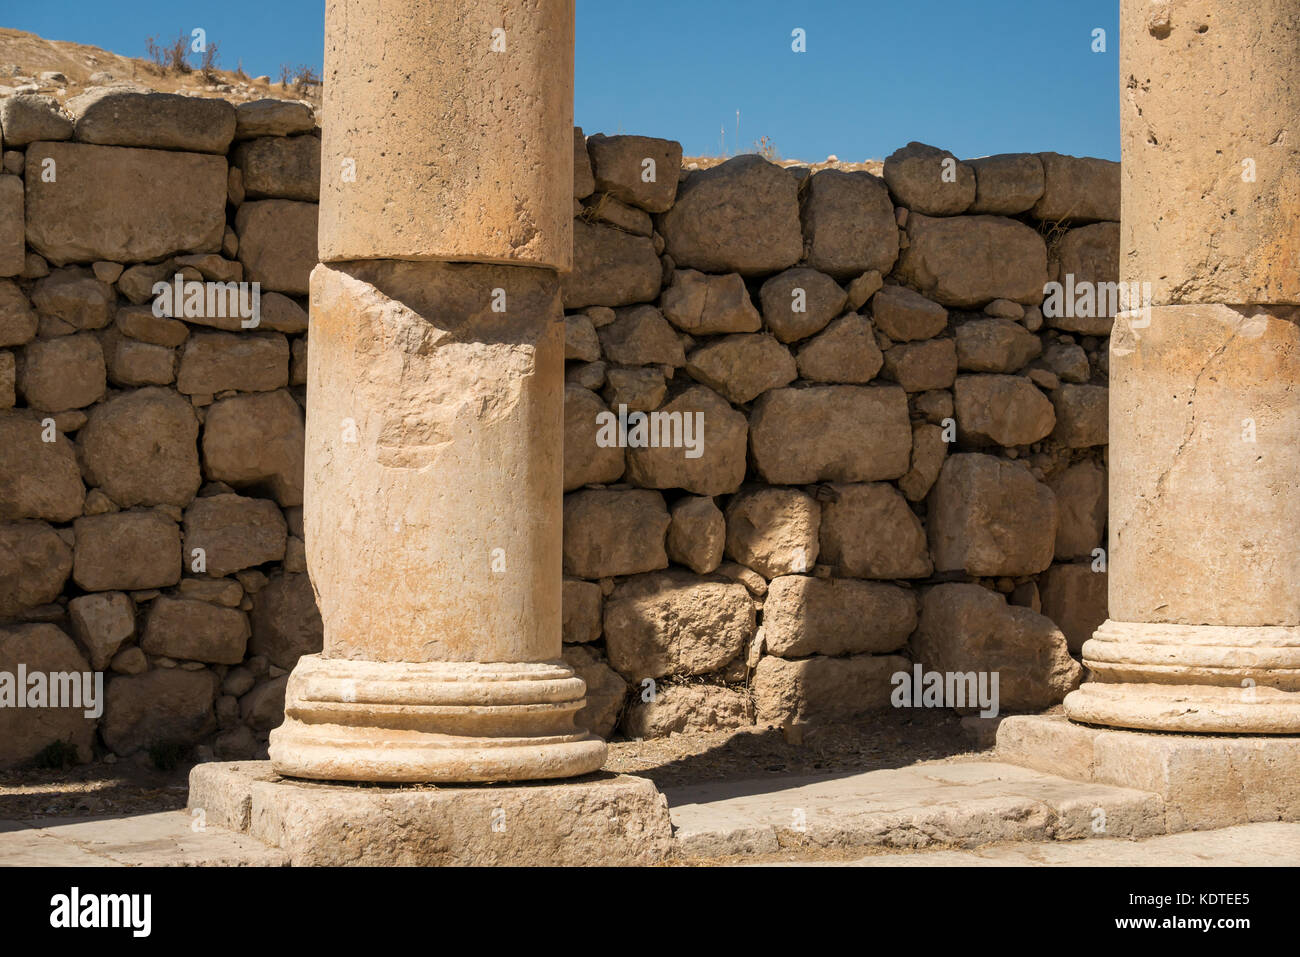 Dettaglio delle pietre usurata nella colonna e terremoto movimento, città romana di Jerash, antica Gerasa, sito archeologico nel nord della Giordania, Medio Oriente Foto Stock